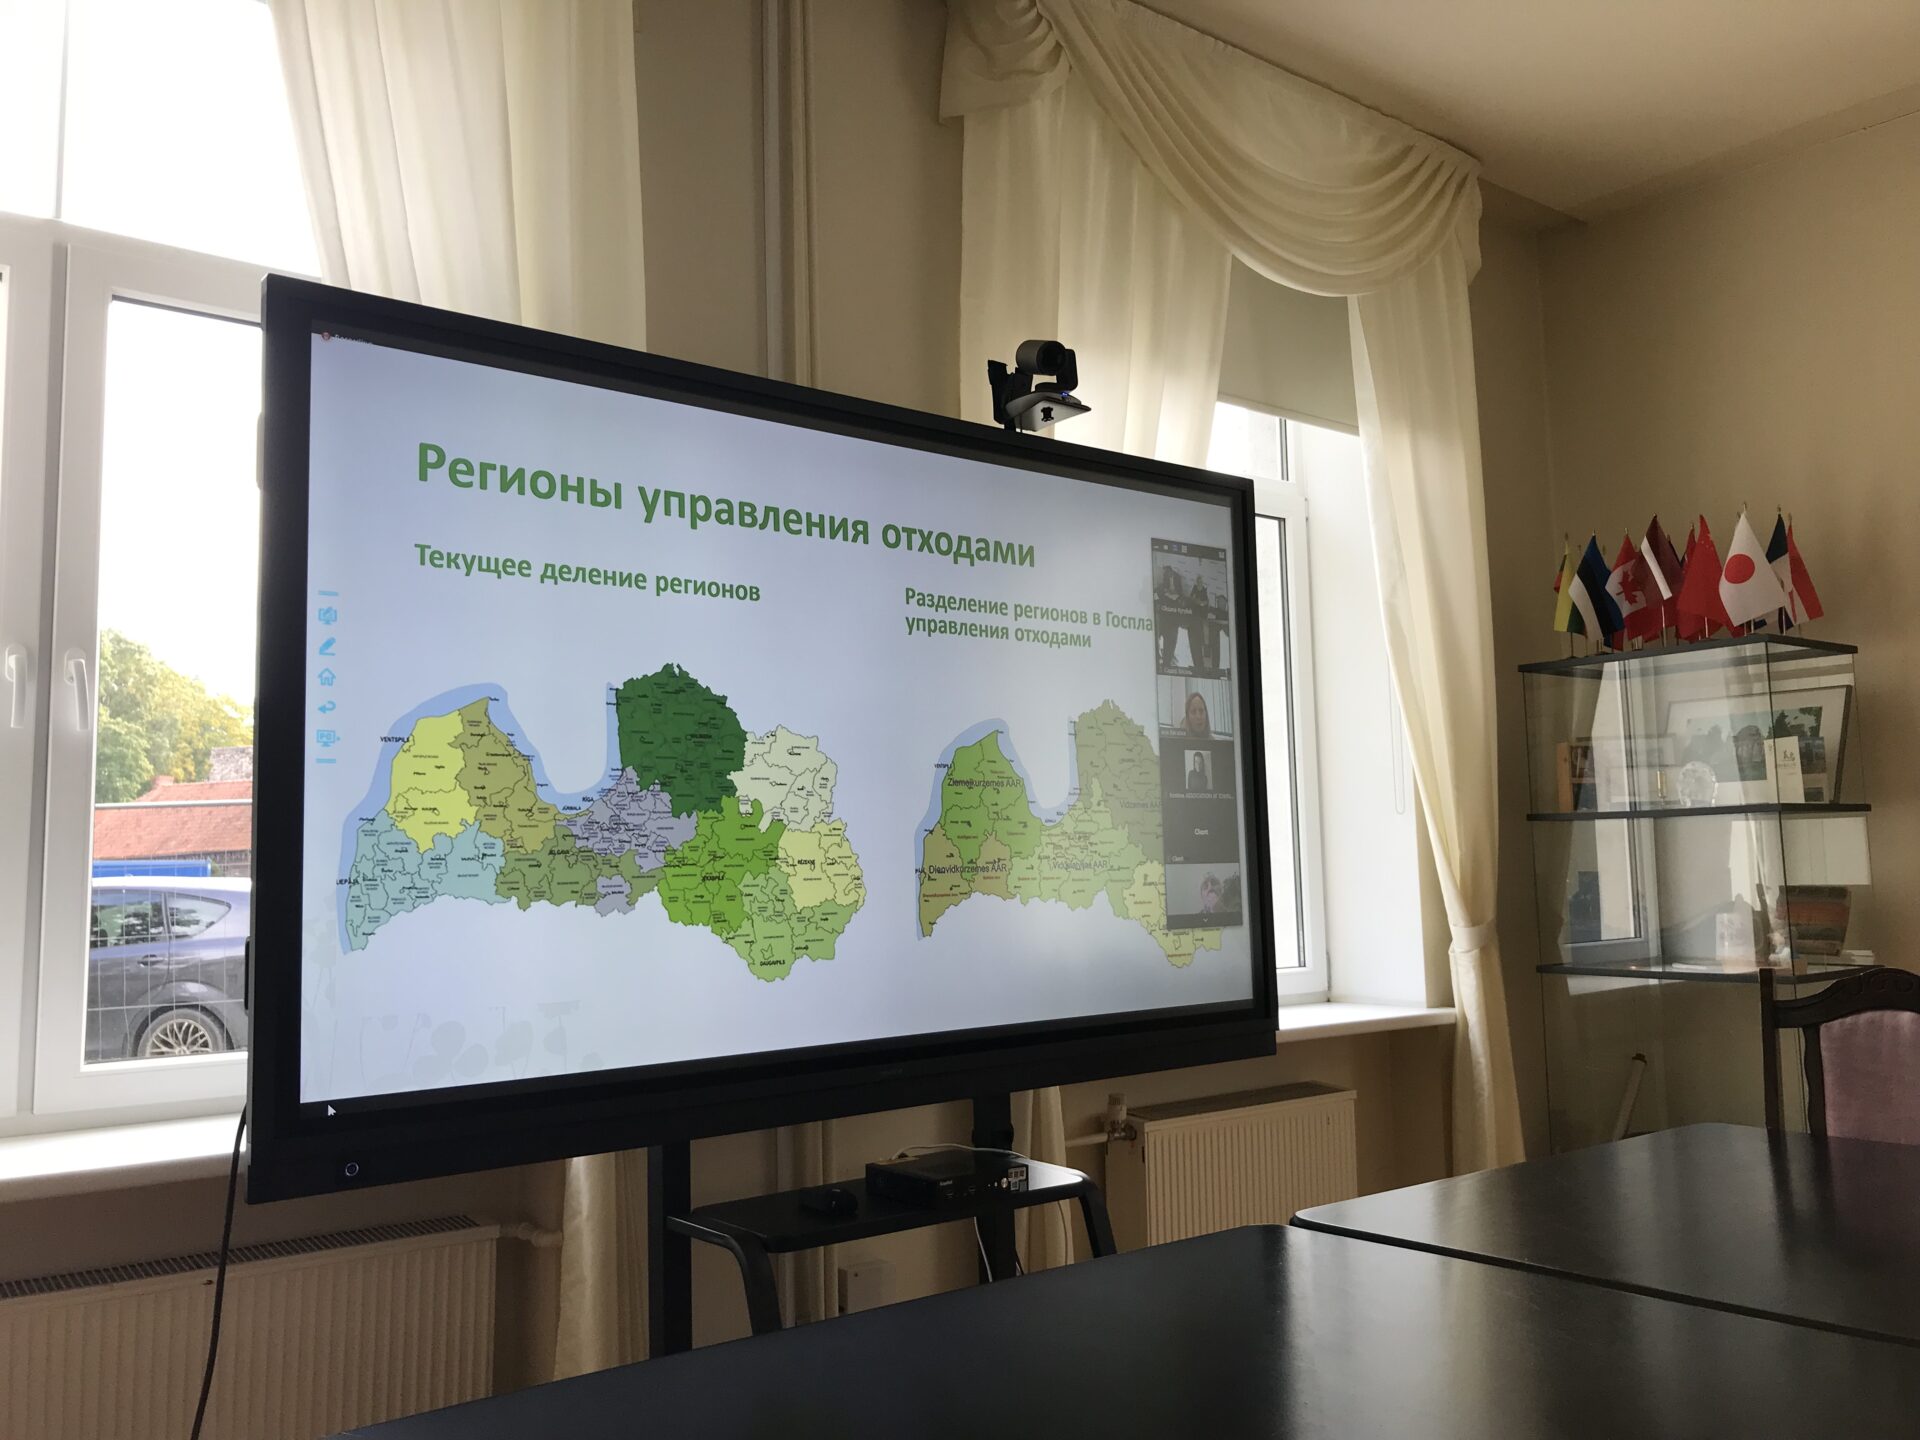 Prezentācoija Ukrainas pašvaldībām